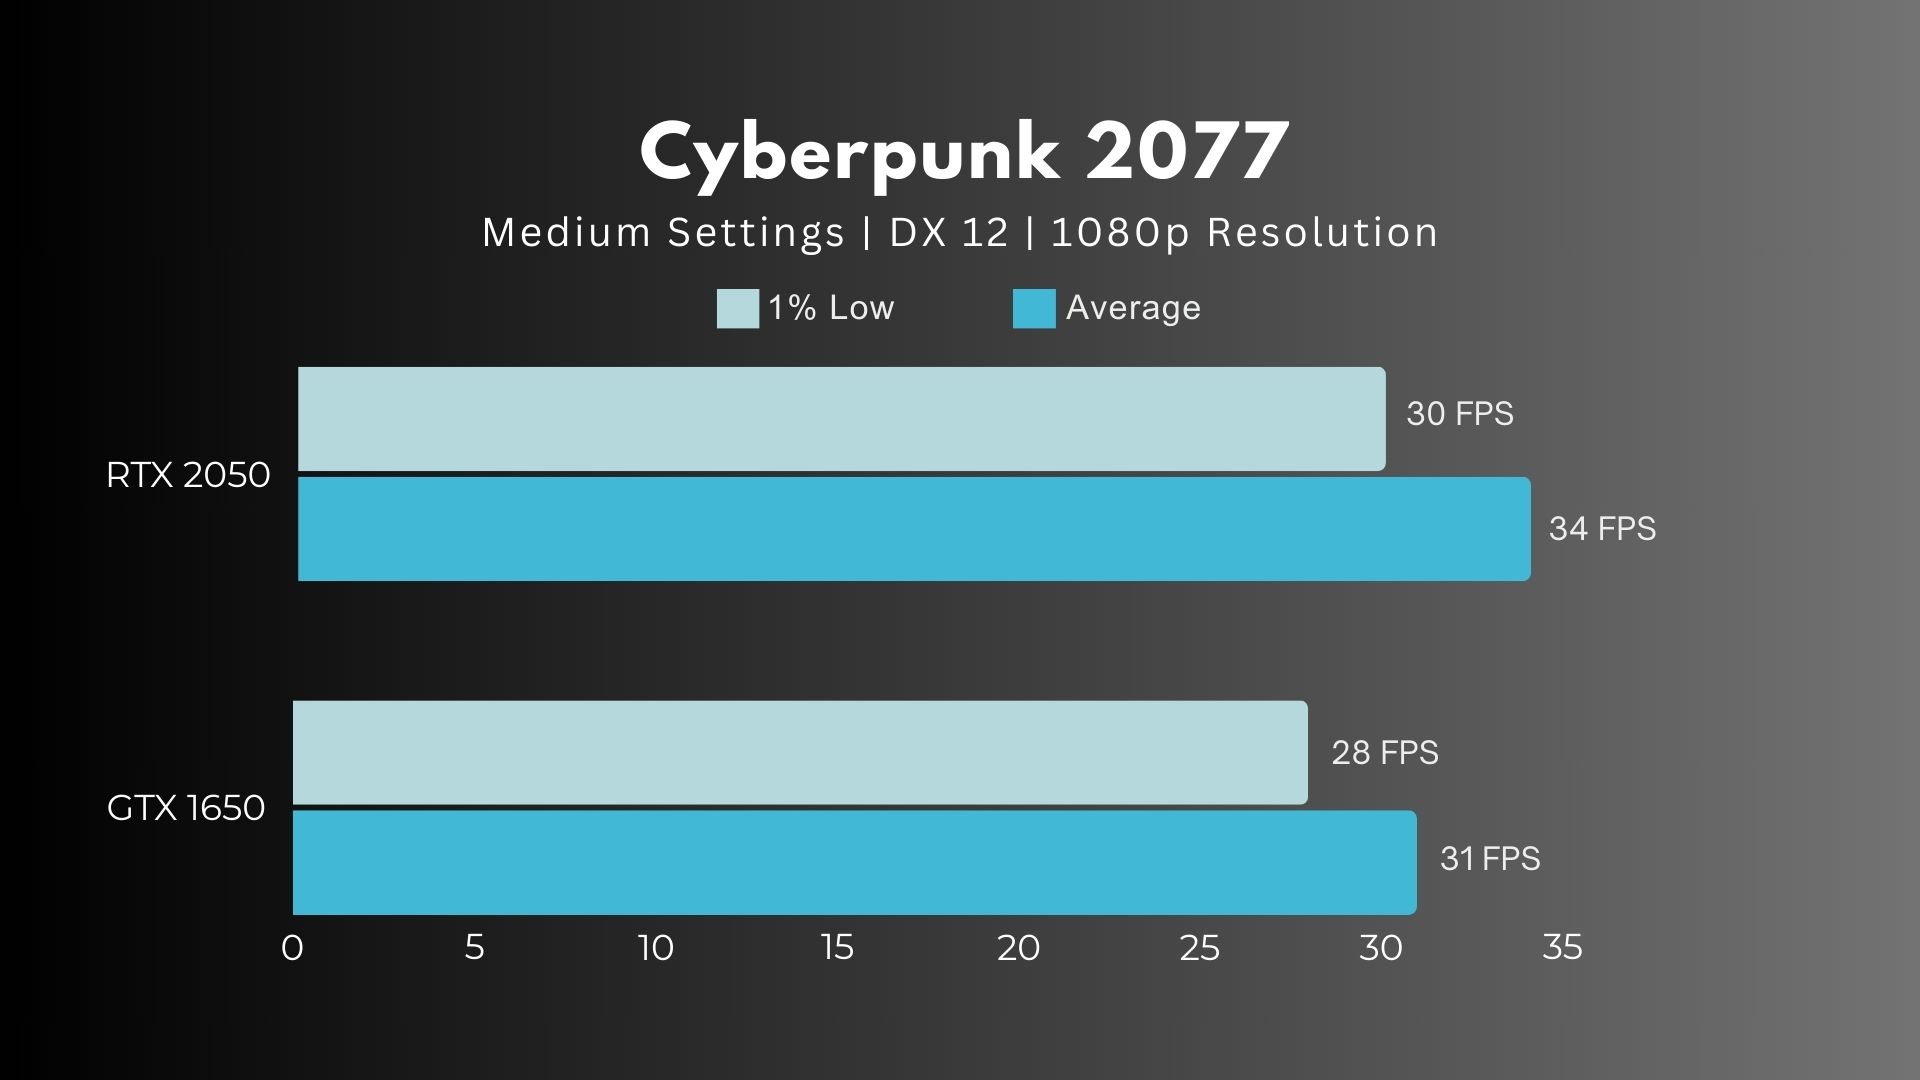 RTX 2050 Vs GTX 1650 Cyberpunk 2077